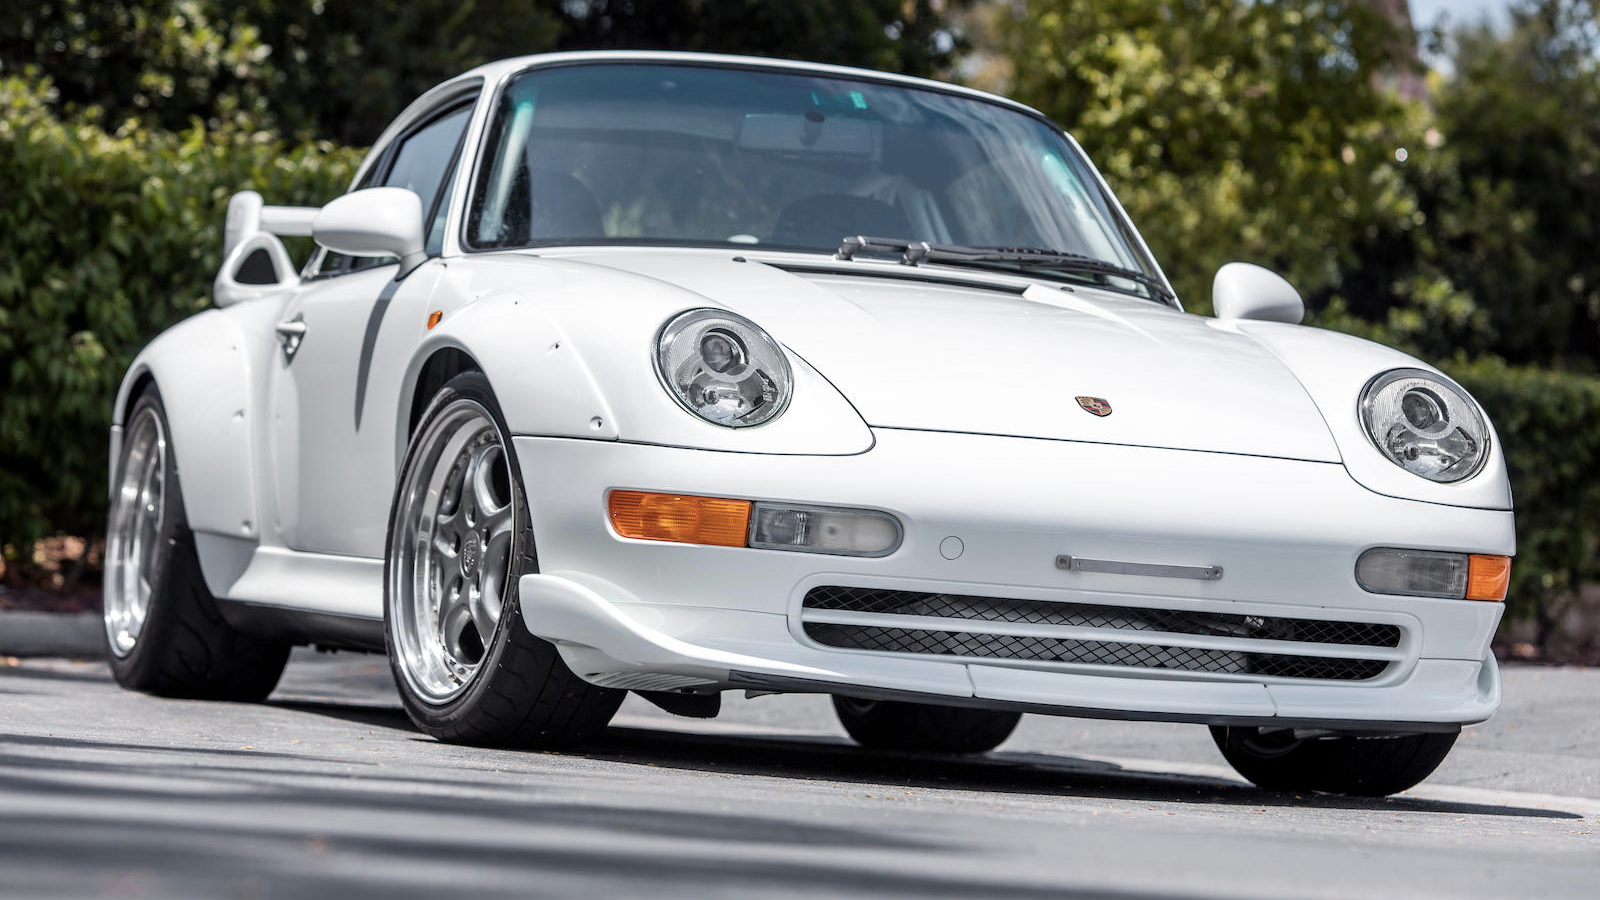 Meet the pristine Porsche 911 worth £1.1m